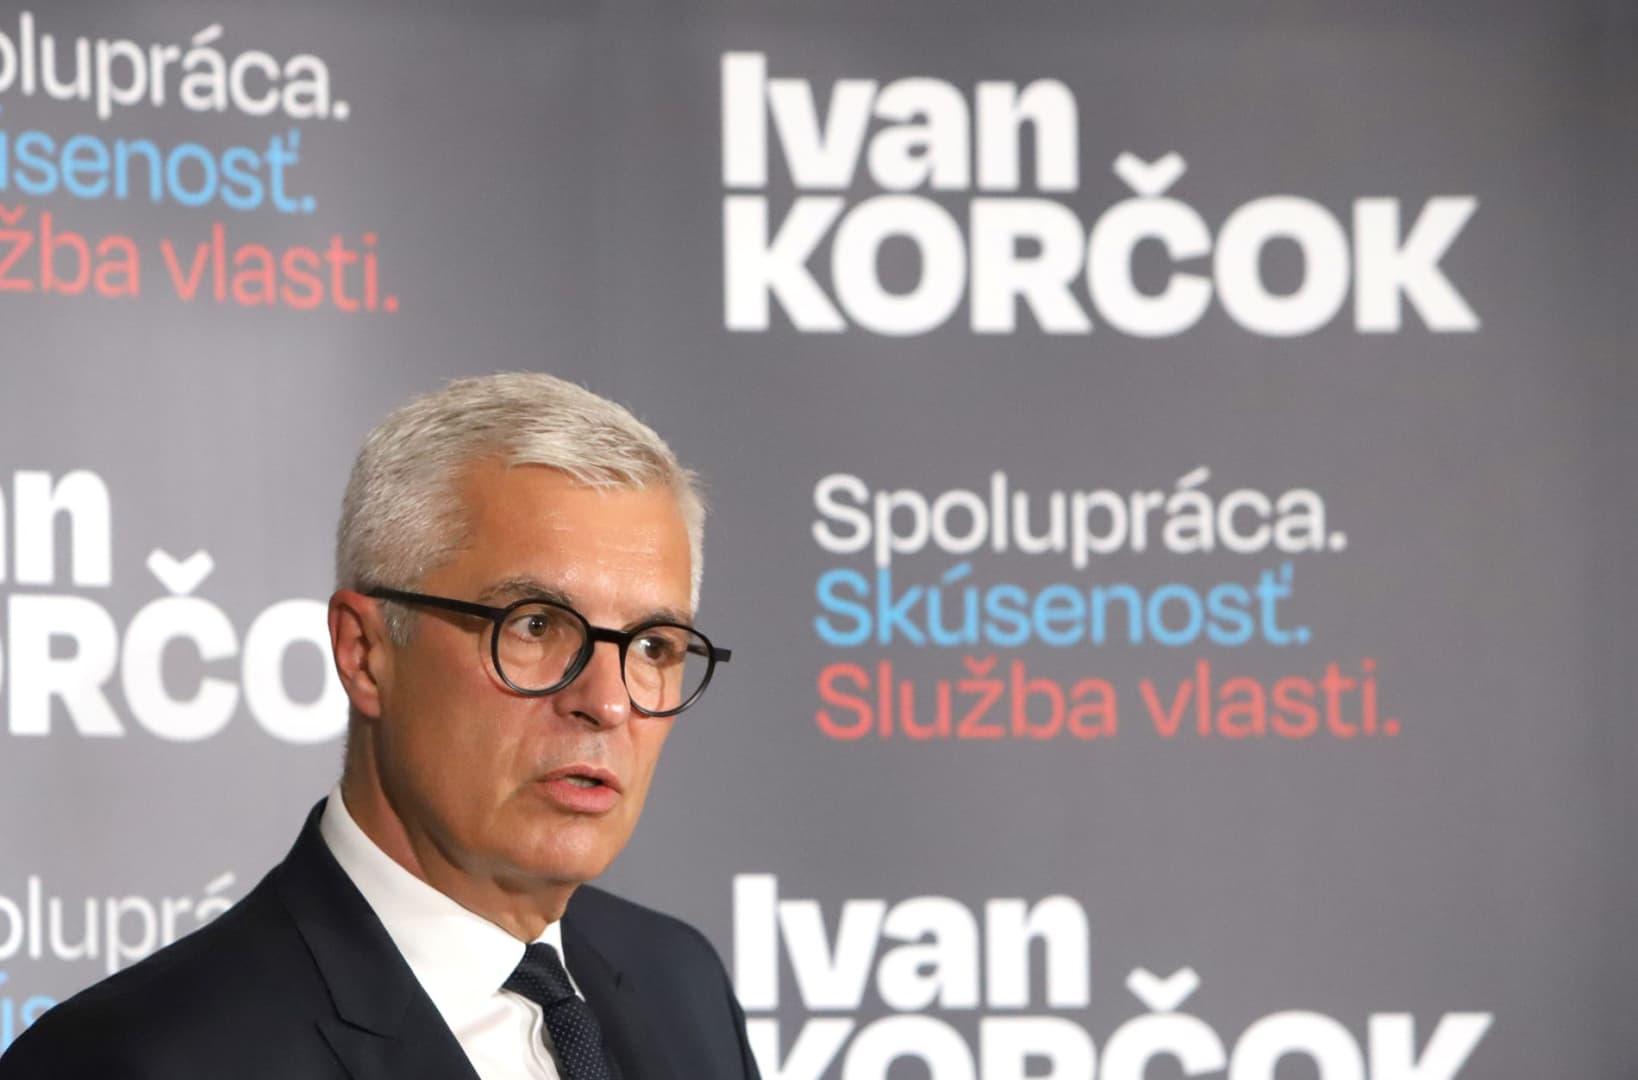 Pártoktól független, polgári elnökjelölt lesz Ivan Korčok, aki ma meg is kezdte, meg nem is a kampányát